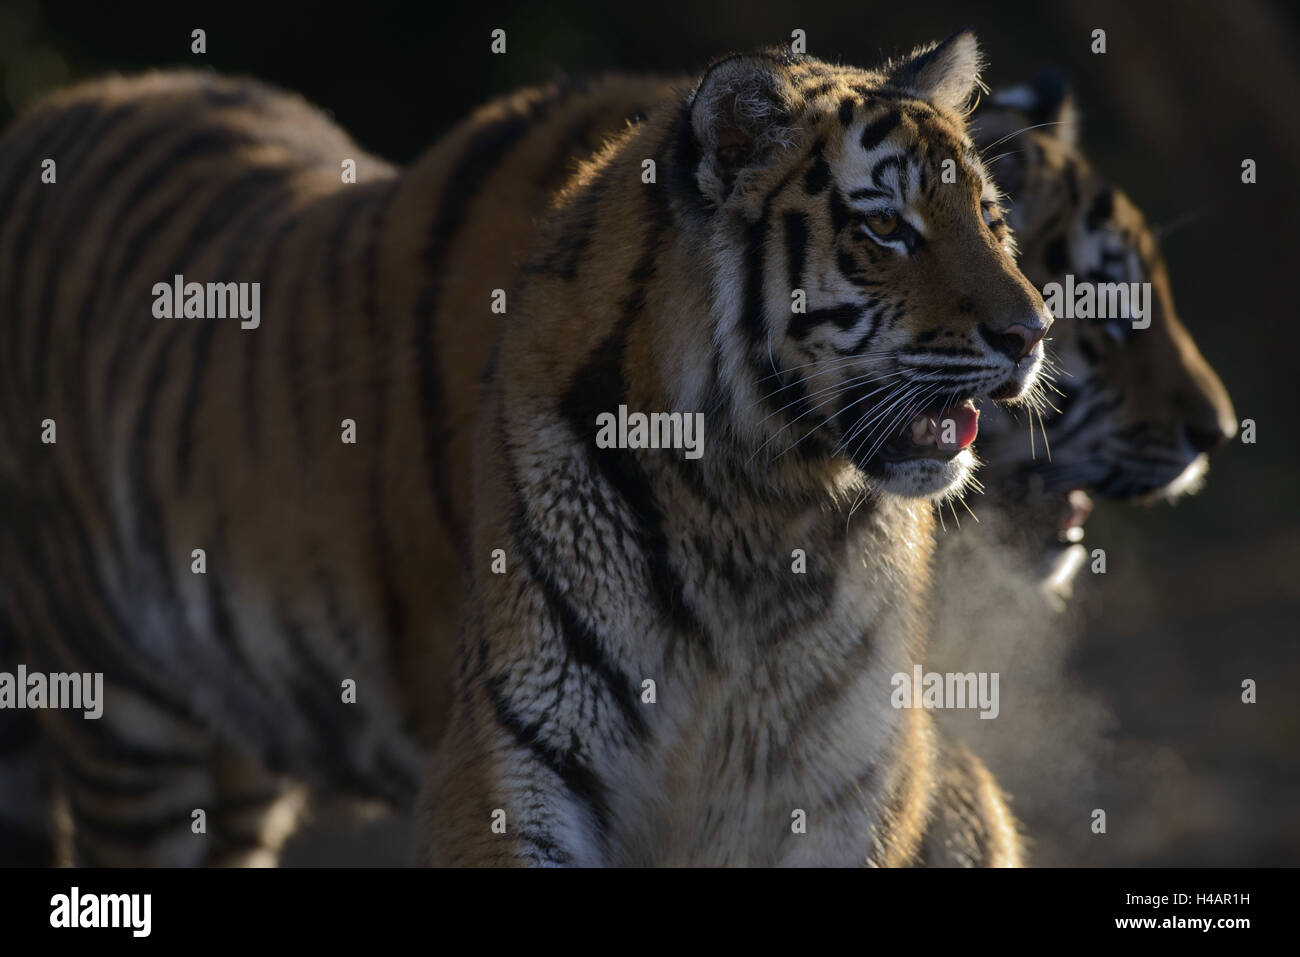 Siberian tigers, Panthera tigris altaica, subadults, Stock Photo